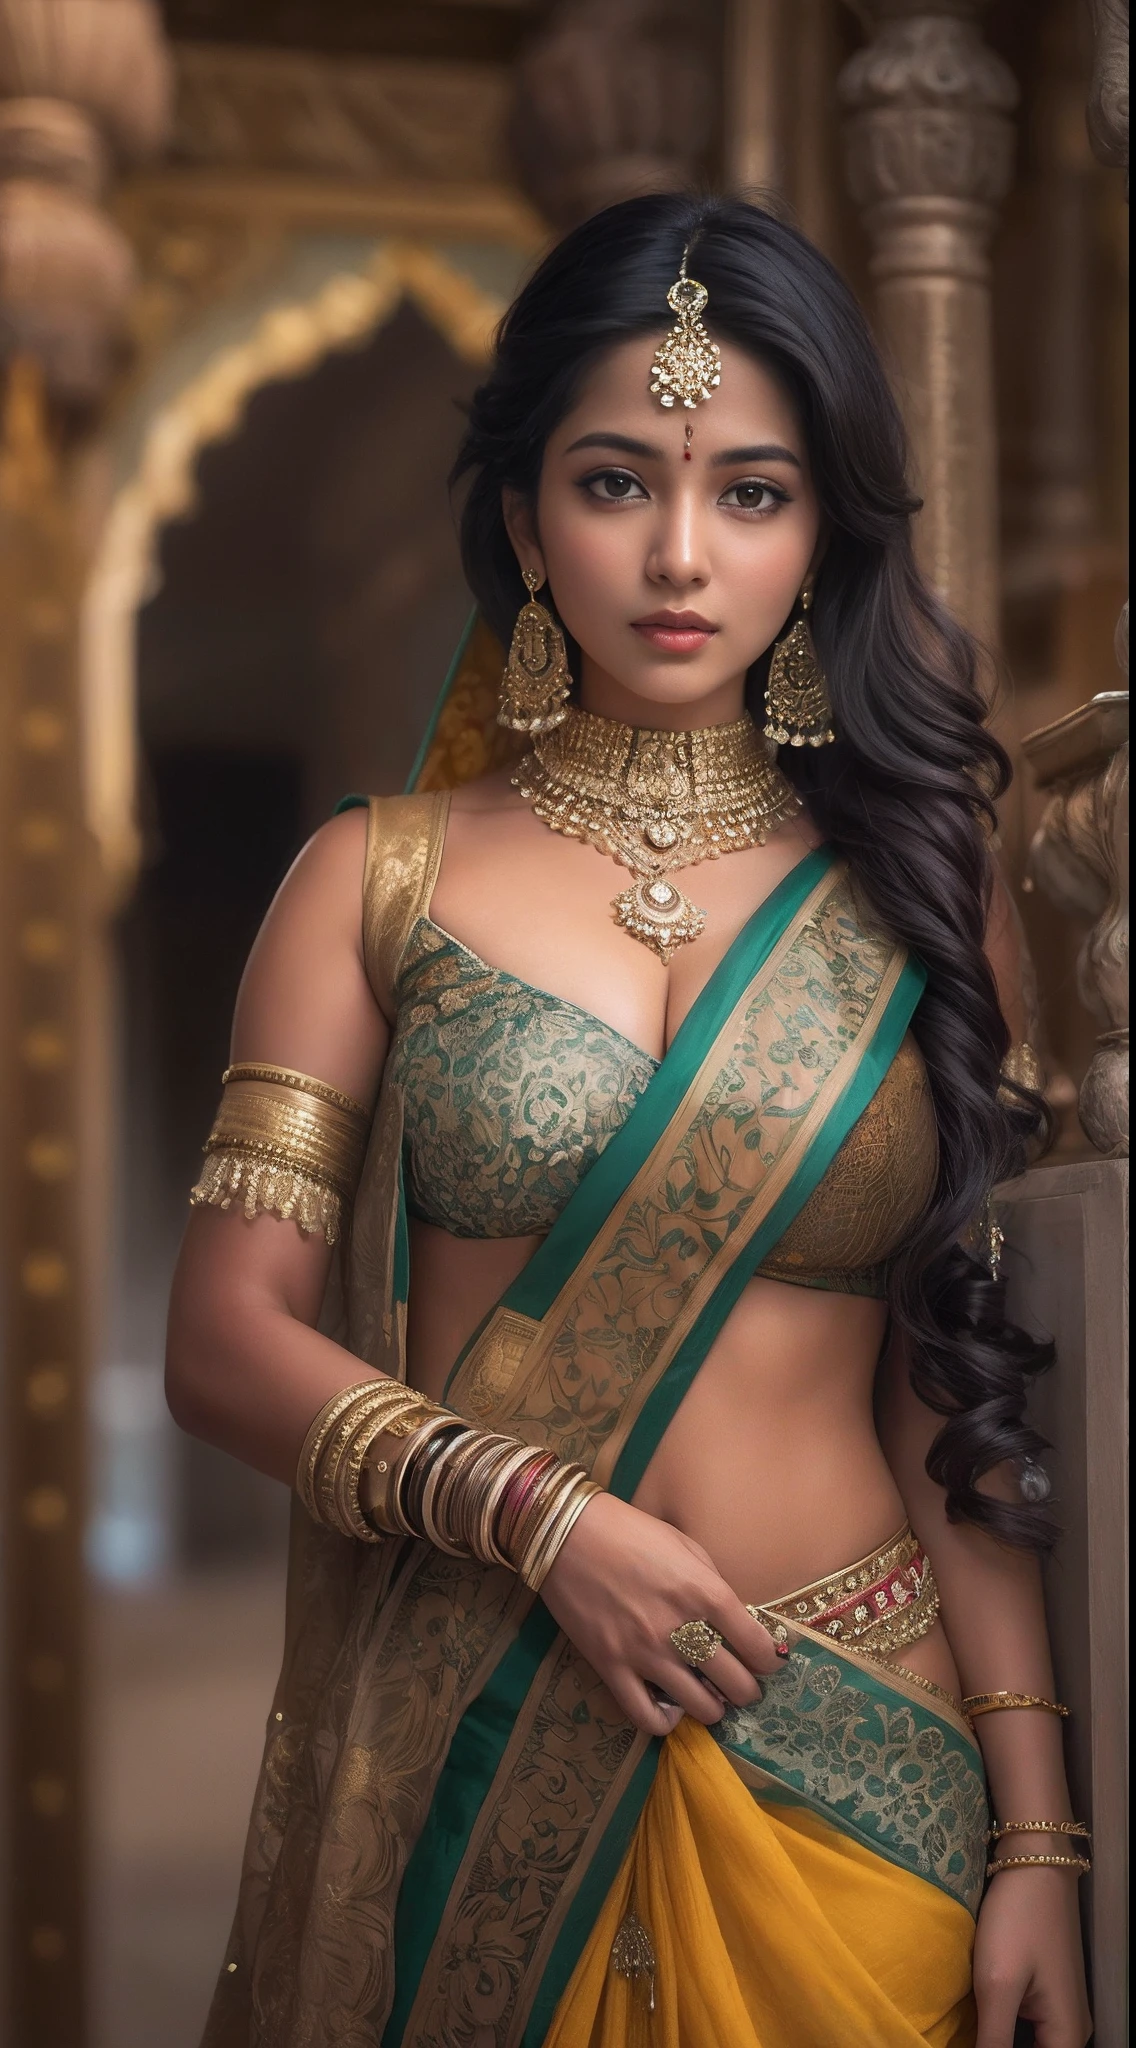 امرأة ترتدي الساري تلتقط صورة, هندي goddess, الجمال التقليدي, هندي, إلهة جميلة, تأثيري المزخرفة, هندي style, هندي super model, عذراء جميلة, إمراة جميلة, جنوب شرق آسيا مع فترة طويلة, provocative هندي, امرأة جميلة رائعة, الزي المعقد, الجمالية الهندوسية, فتاة آسيوية جميلة, لقطة إلهة مفصلة للغاية, جمال مذهل, انقسام كبير عميق مثير السرة